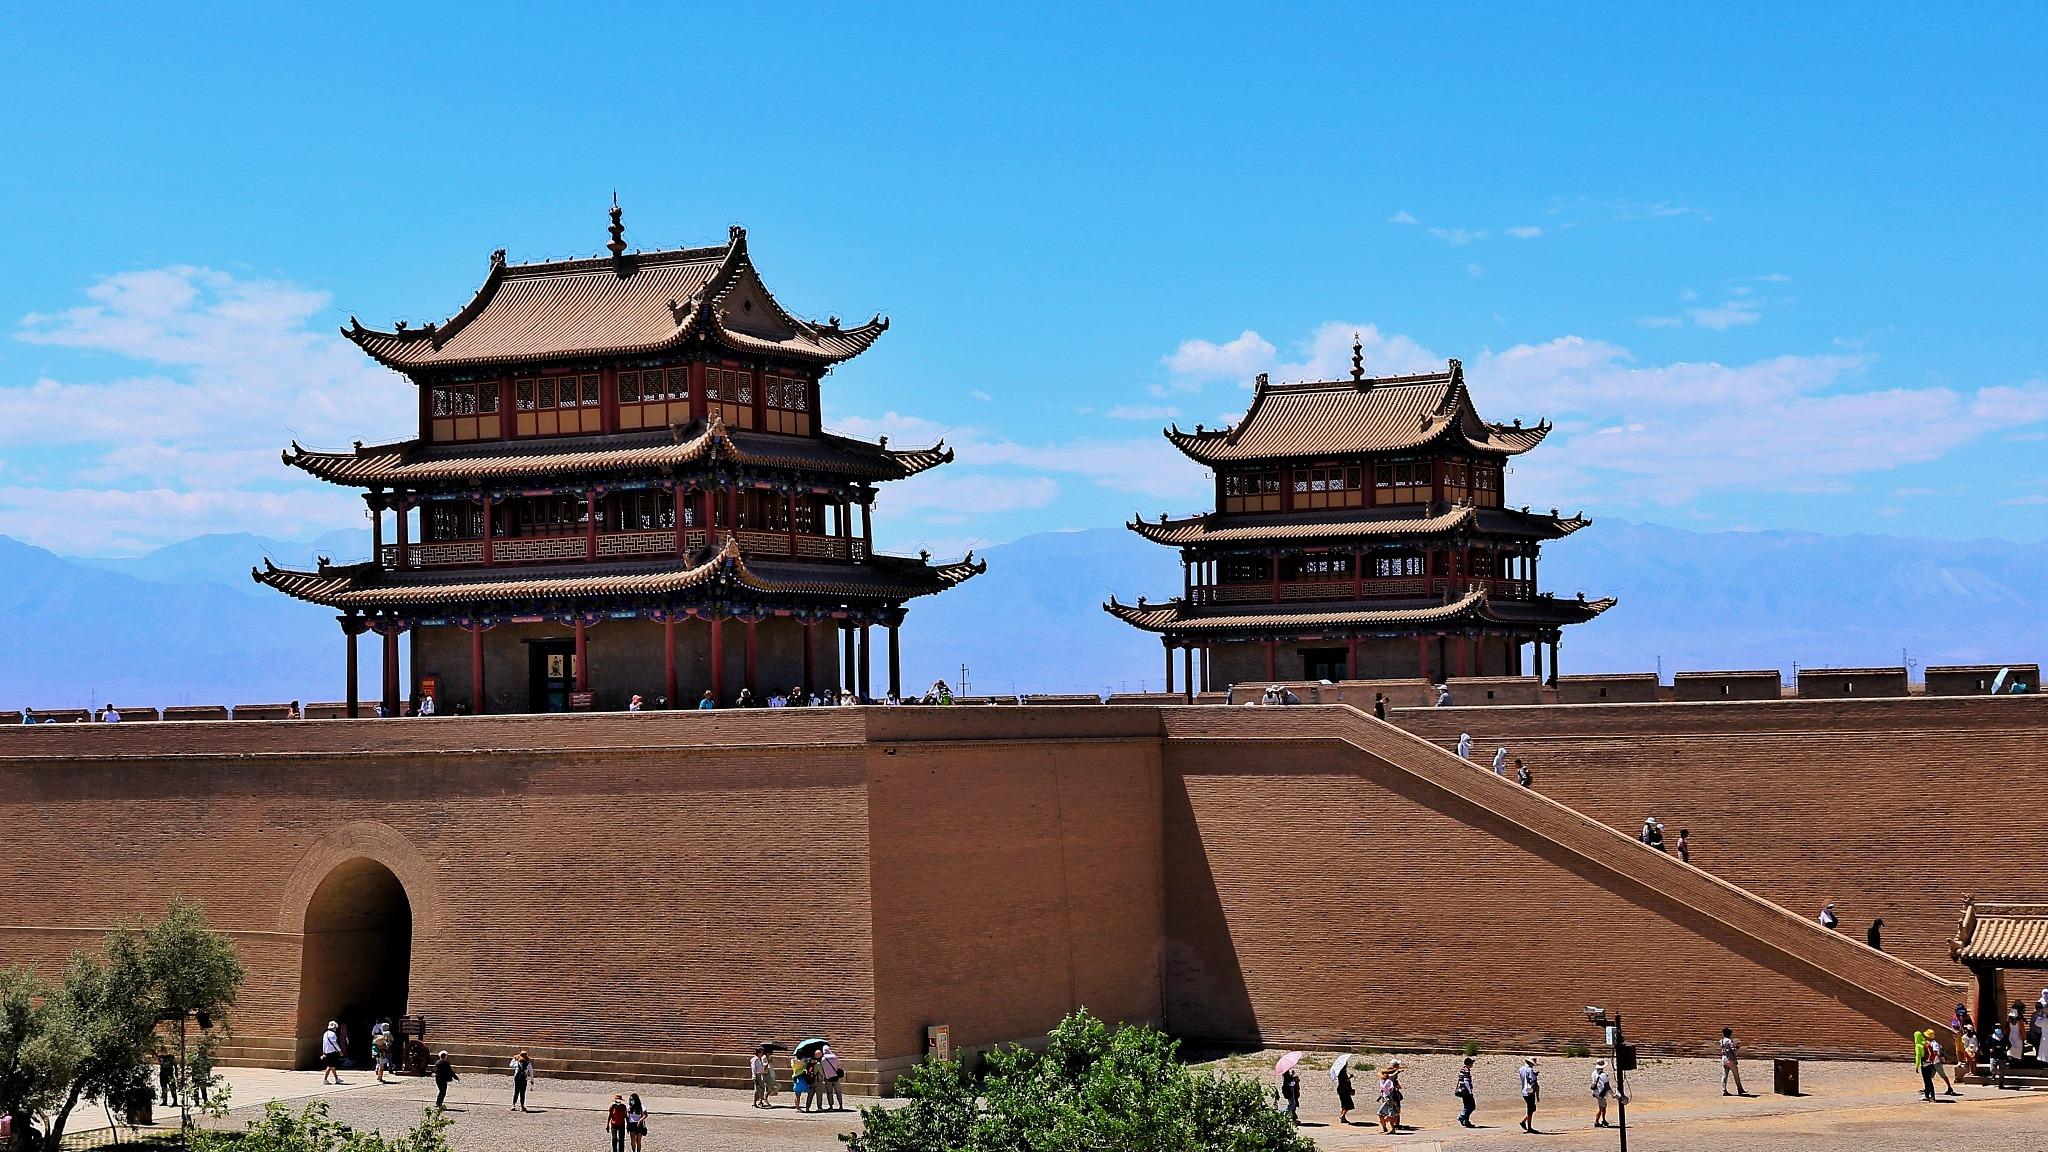 Das Dorf Jiayuguan in Gansu: Mit Blick auf die Große Mauer wird die Heimat erreicht